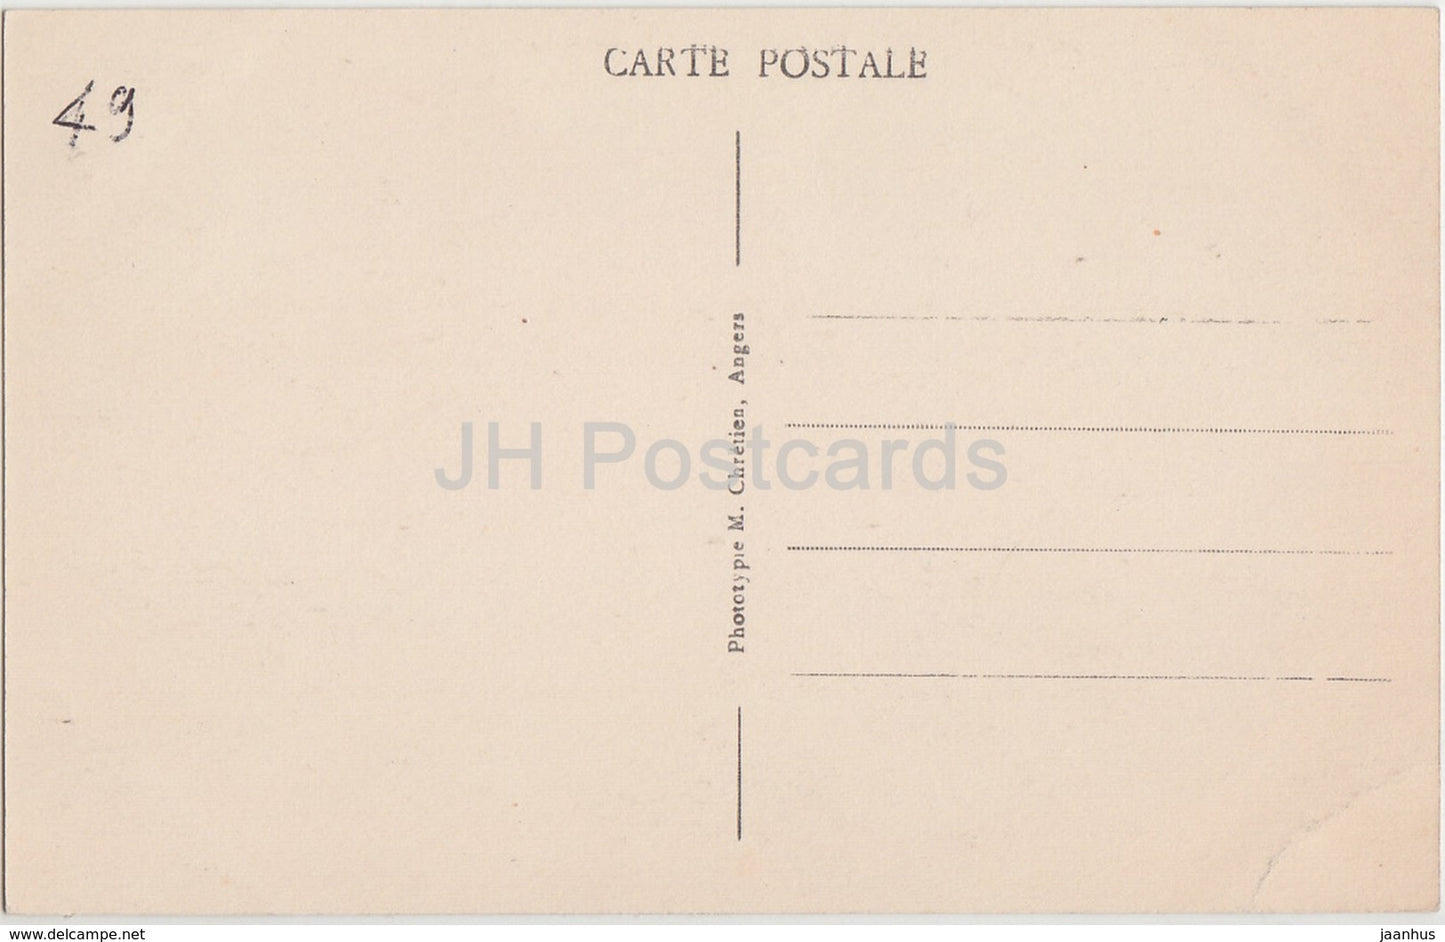 Angers - Le Château féodal moderniser - par se douves fleuries - château - 20 - carte postale ancienne - France - inutilisé